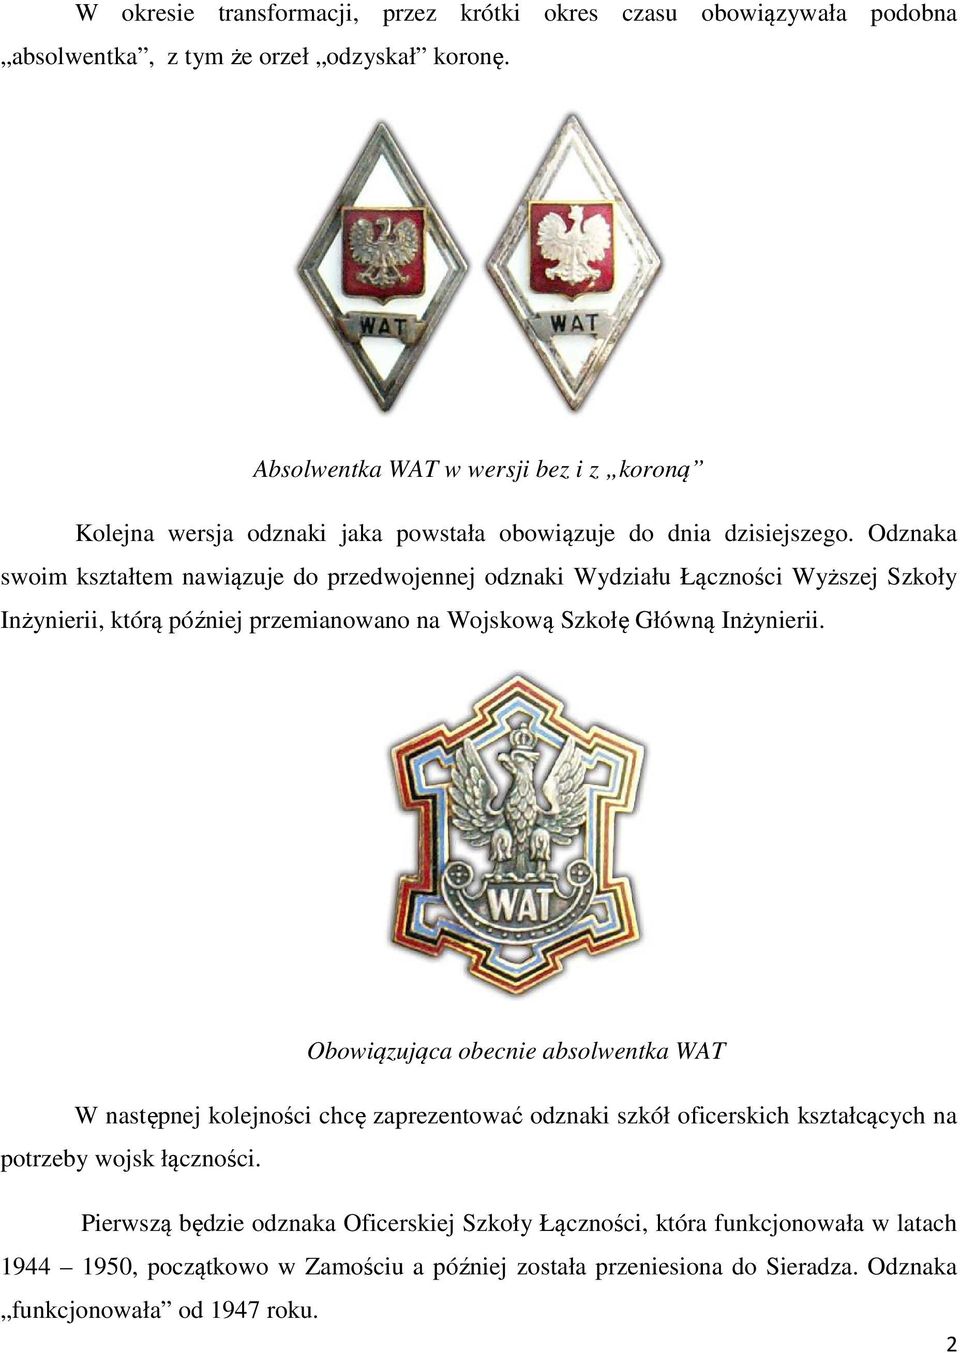 Odznaka swoim kształtem nawiązuje do przedwojennej odznaki Wydziału Łączności Wyższej Szkoły Inżynierii, którą później przemianowano na Wojskową Szkołę Główną Inżynierii.